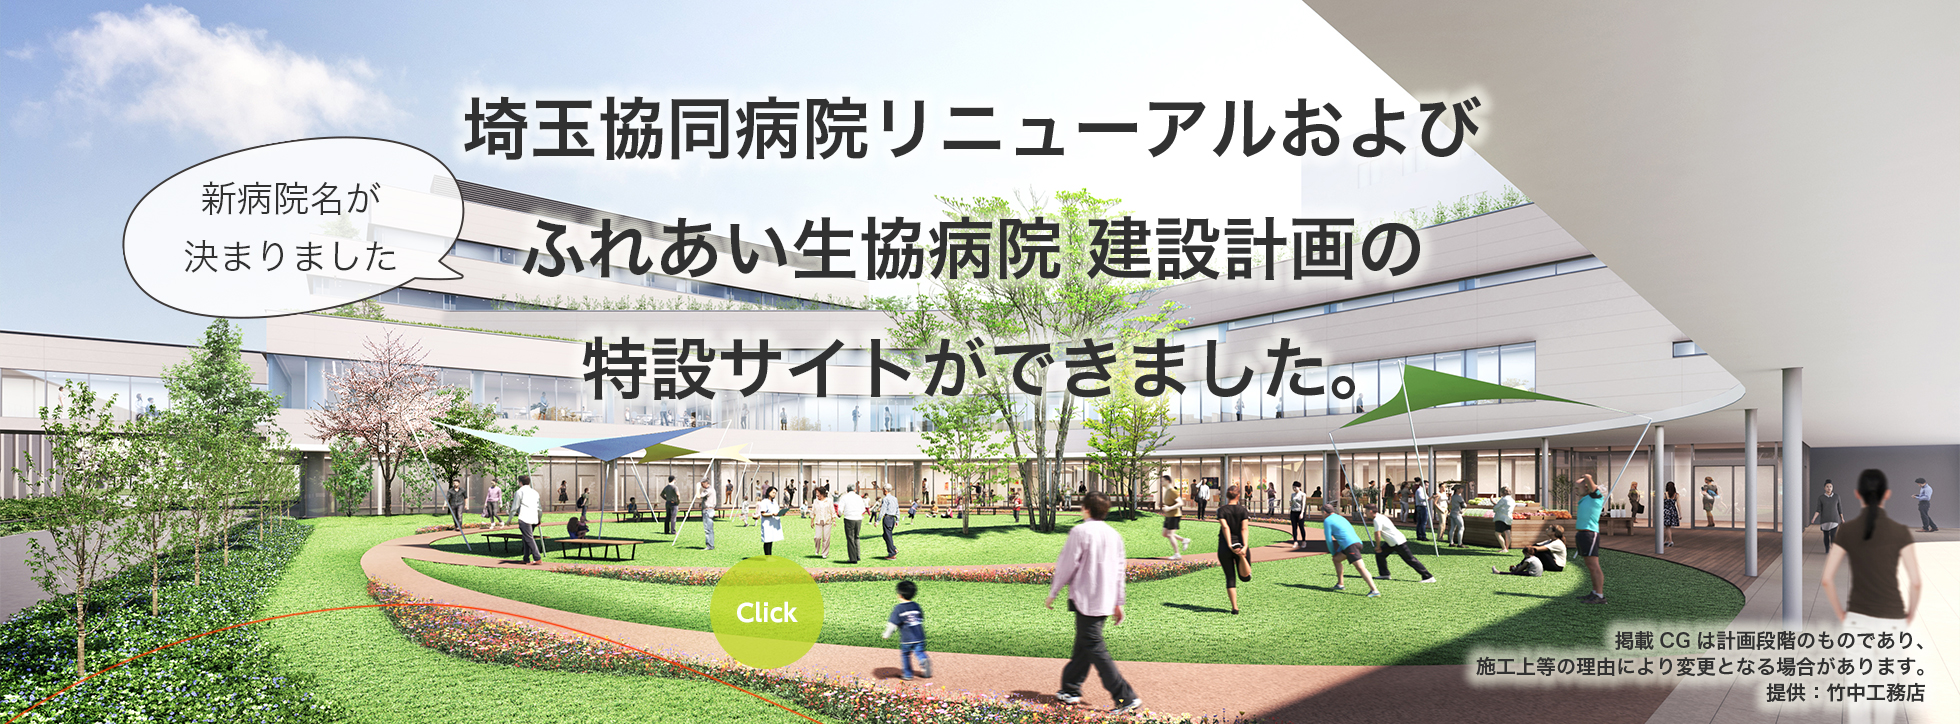 埼玉協同病院リニューアル および ふれあい生協病院 建設計画の特設サイトができました。